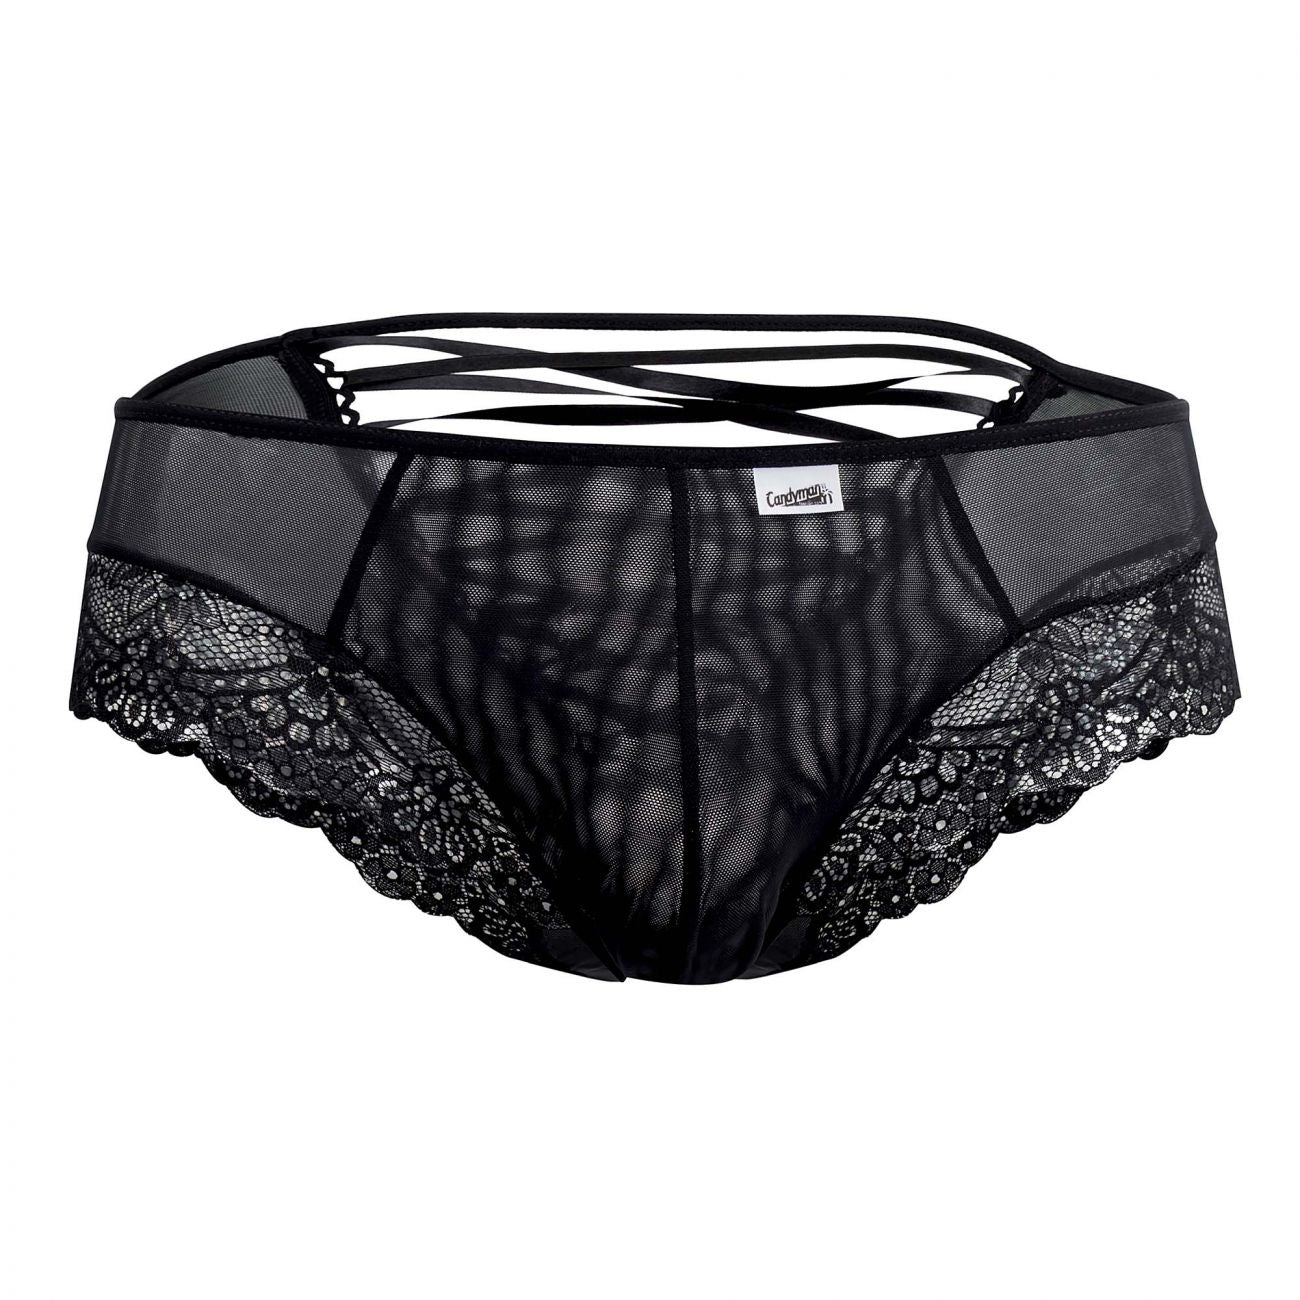 CandyMan 99392X Lace Thongs Black Plus Sizes